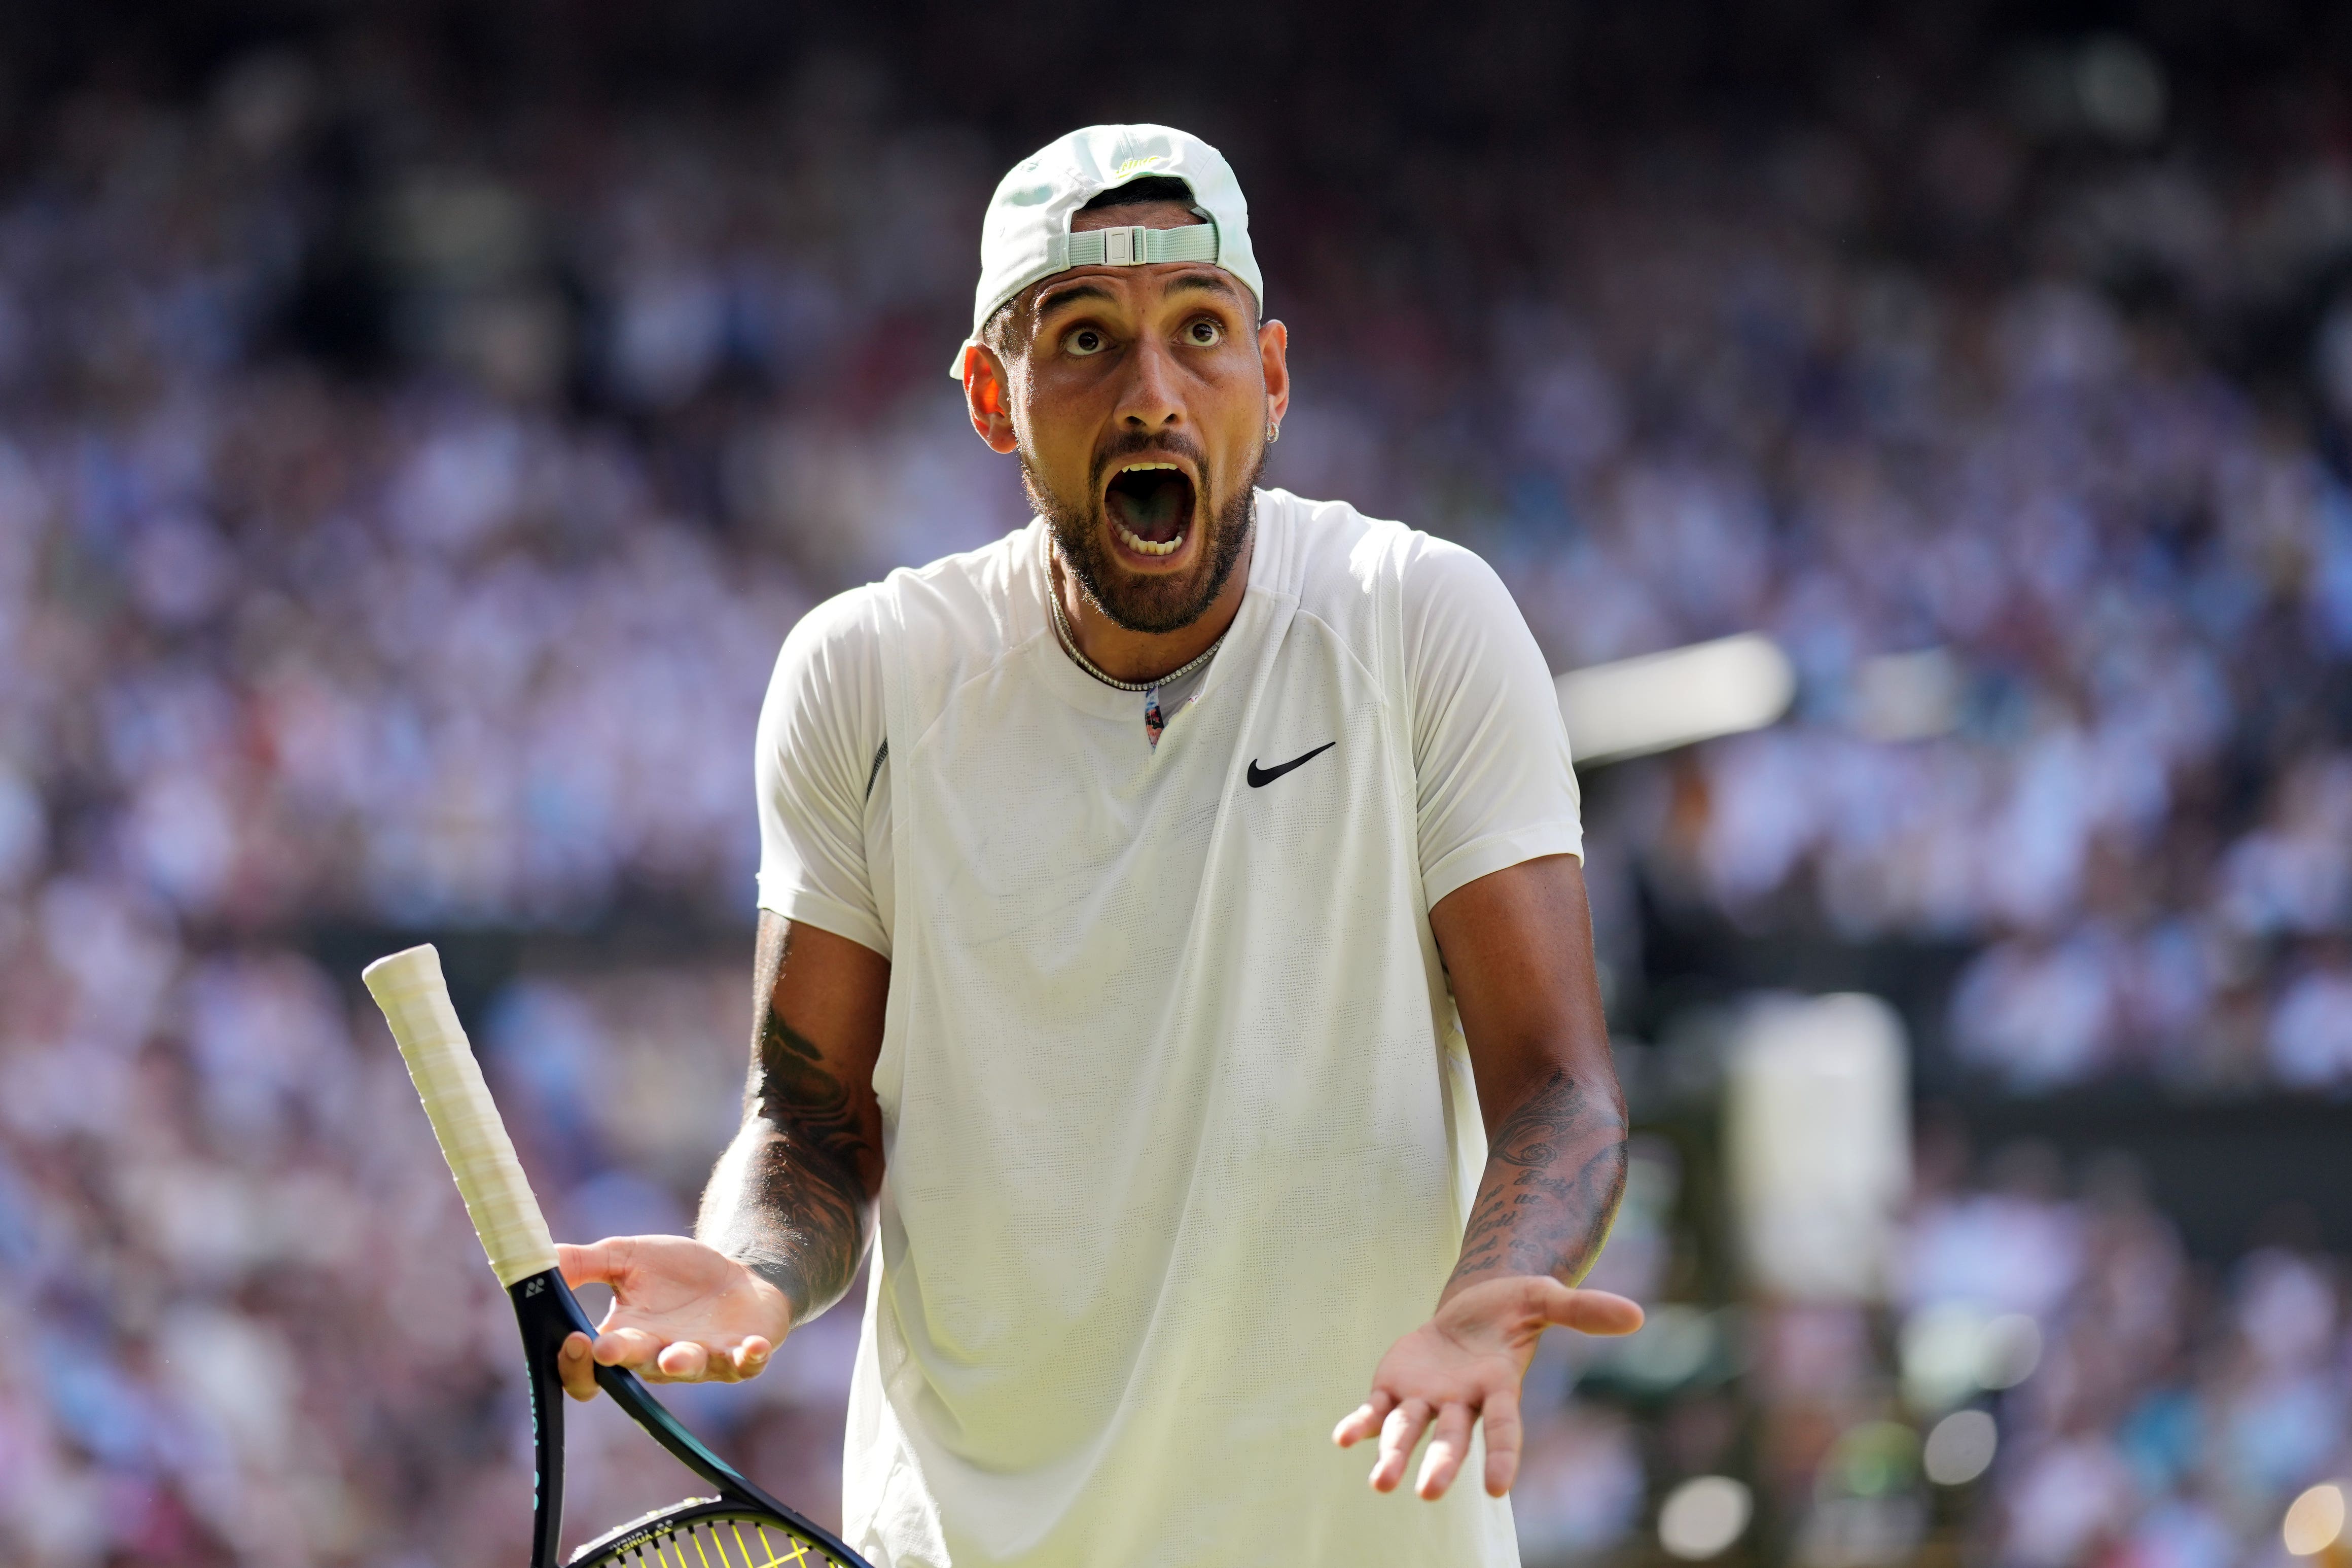 Nick Kyrgios provided entertainment at Wimbledon (PA)